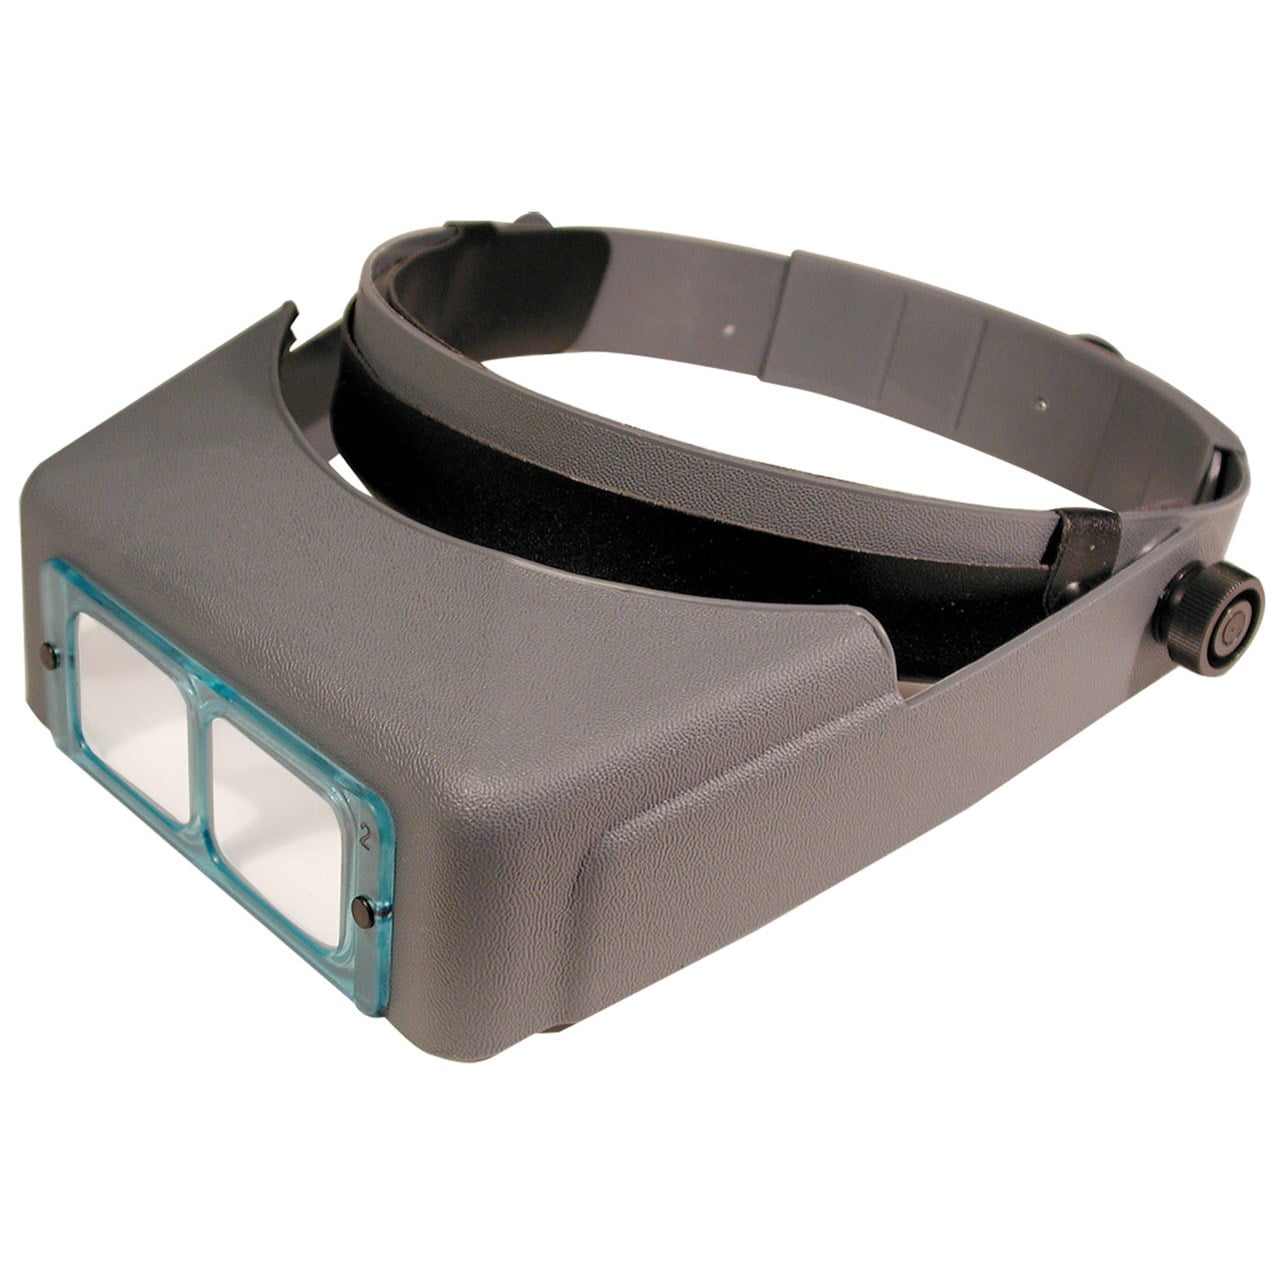 Optivisor Headband Magnifier